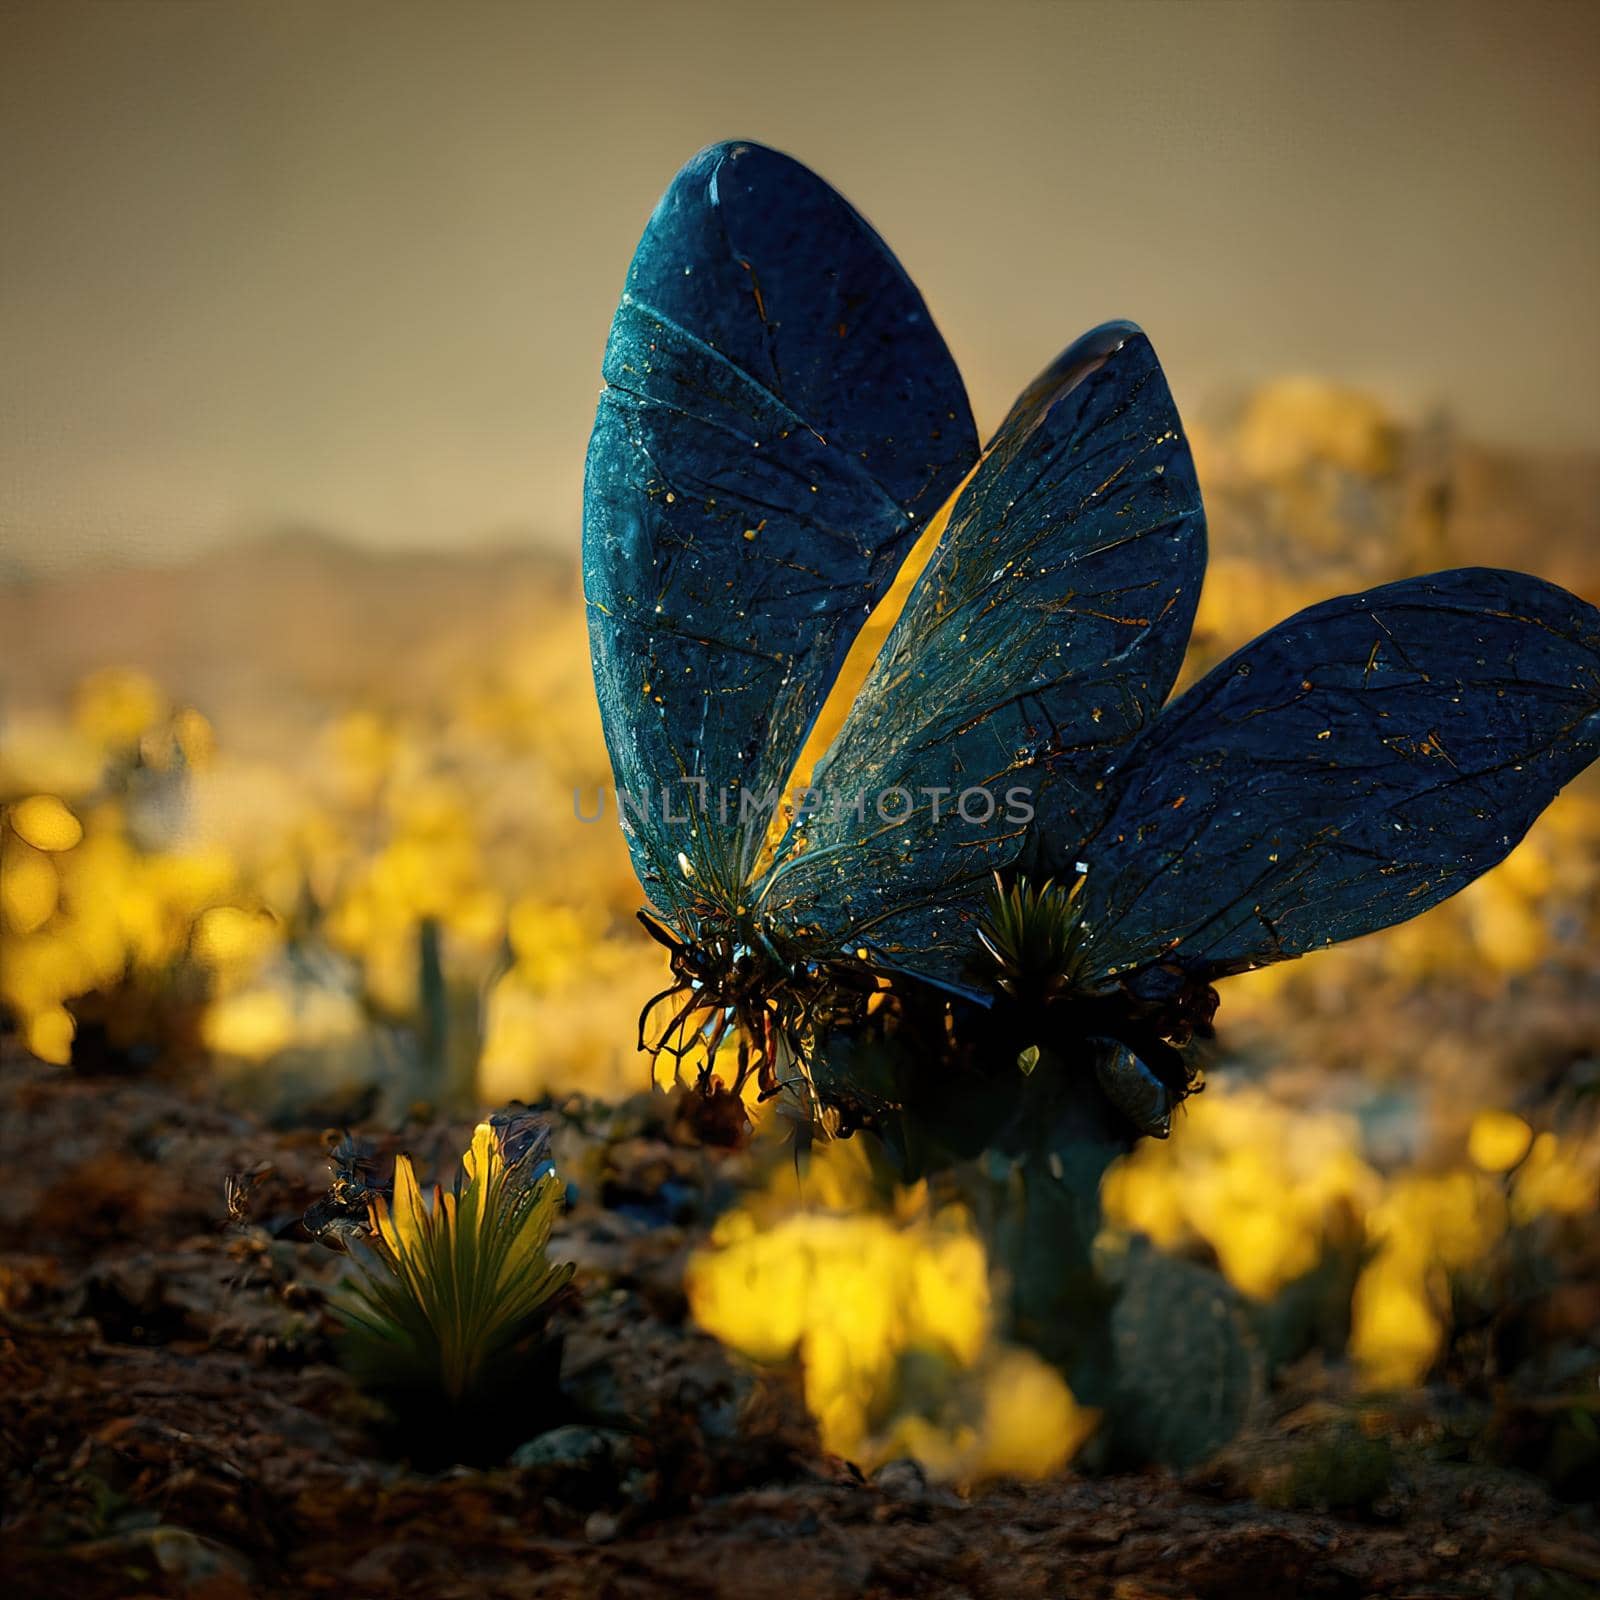 Digital art of butterfly sitting on flower by Farcas